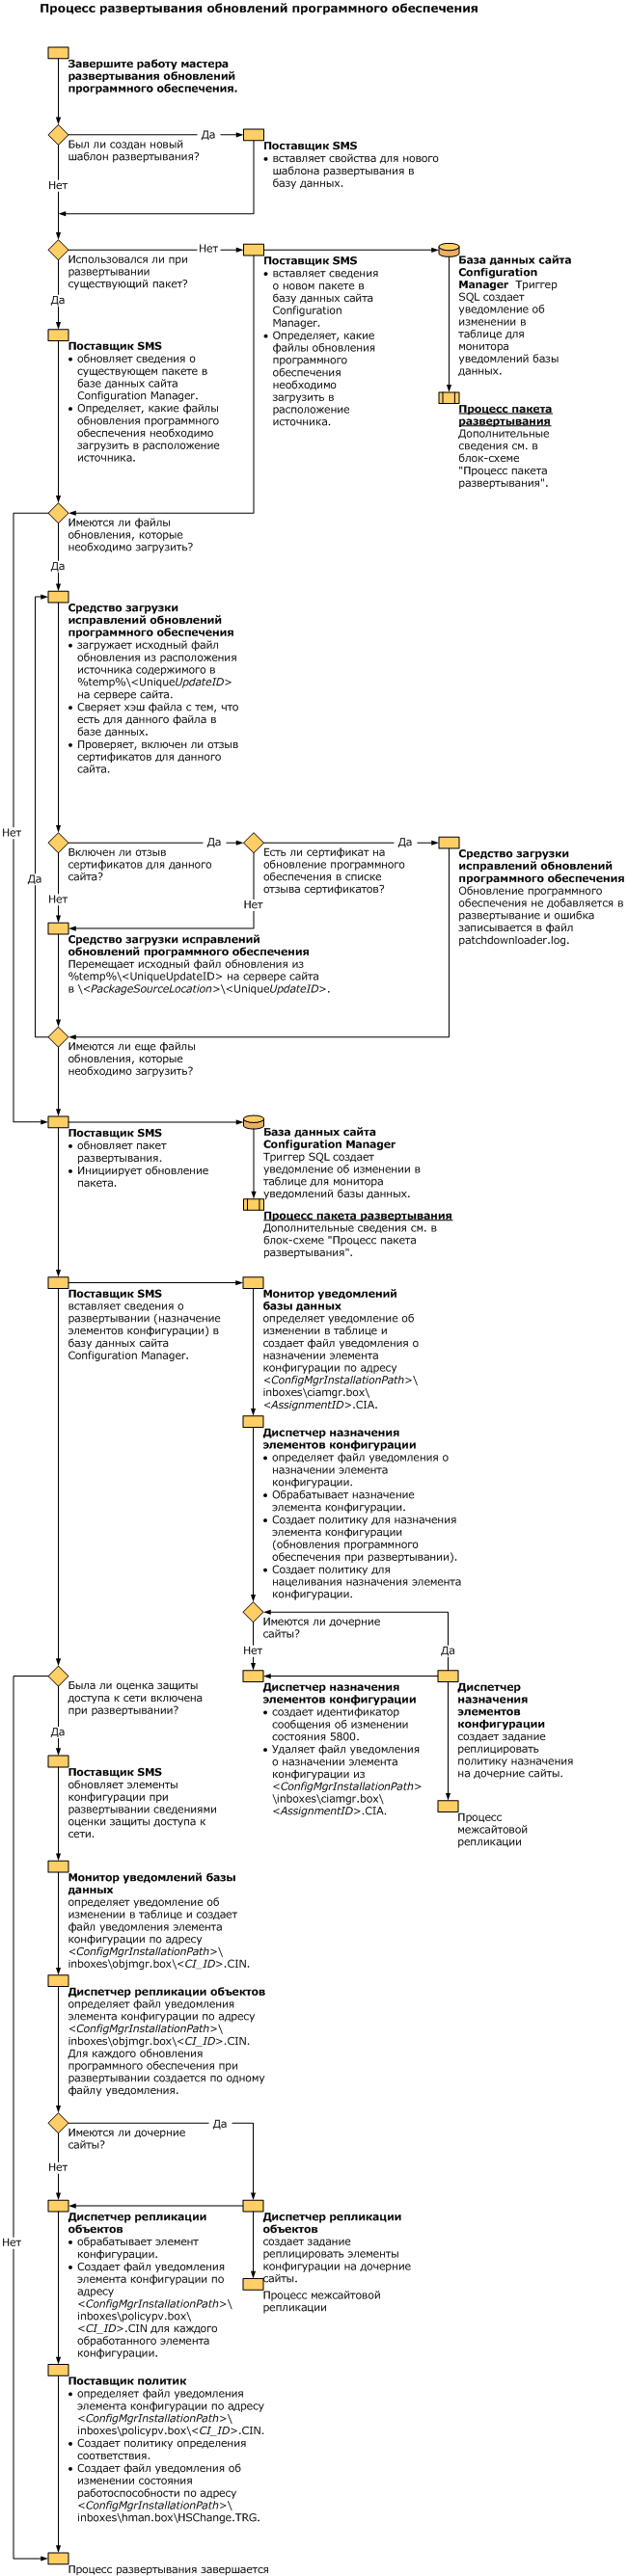 Блок-схема развертывания обновления программного обеспечения